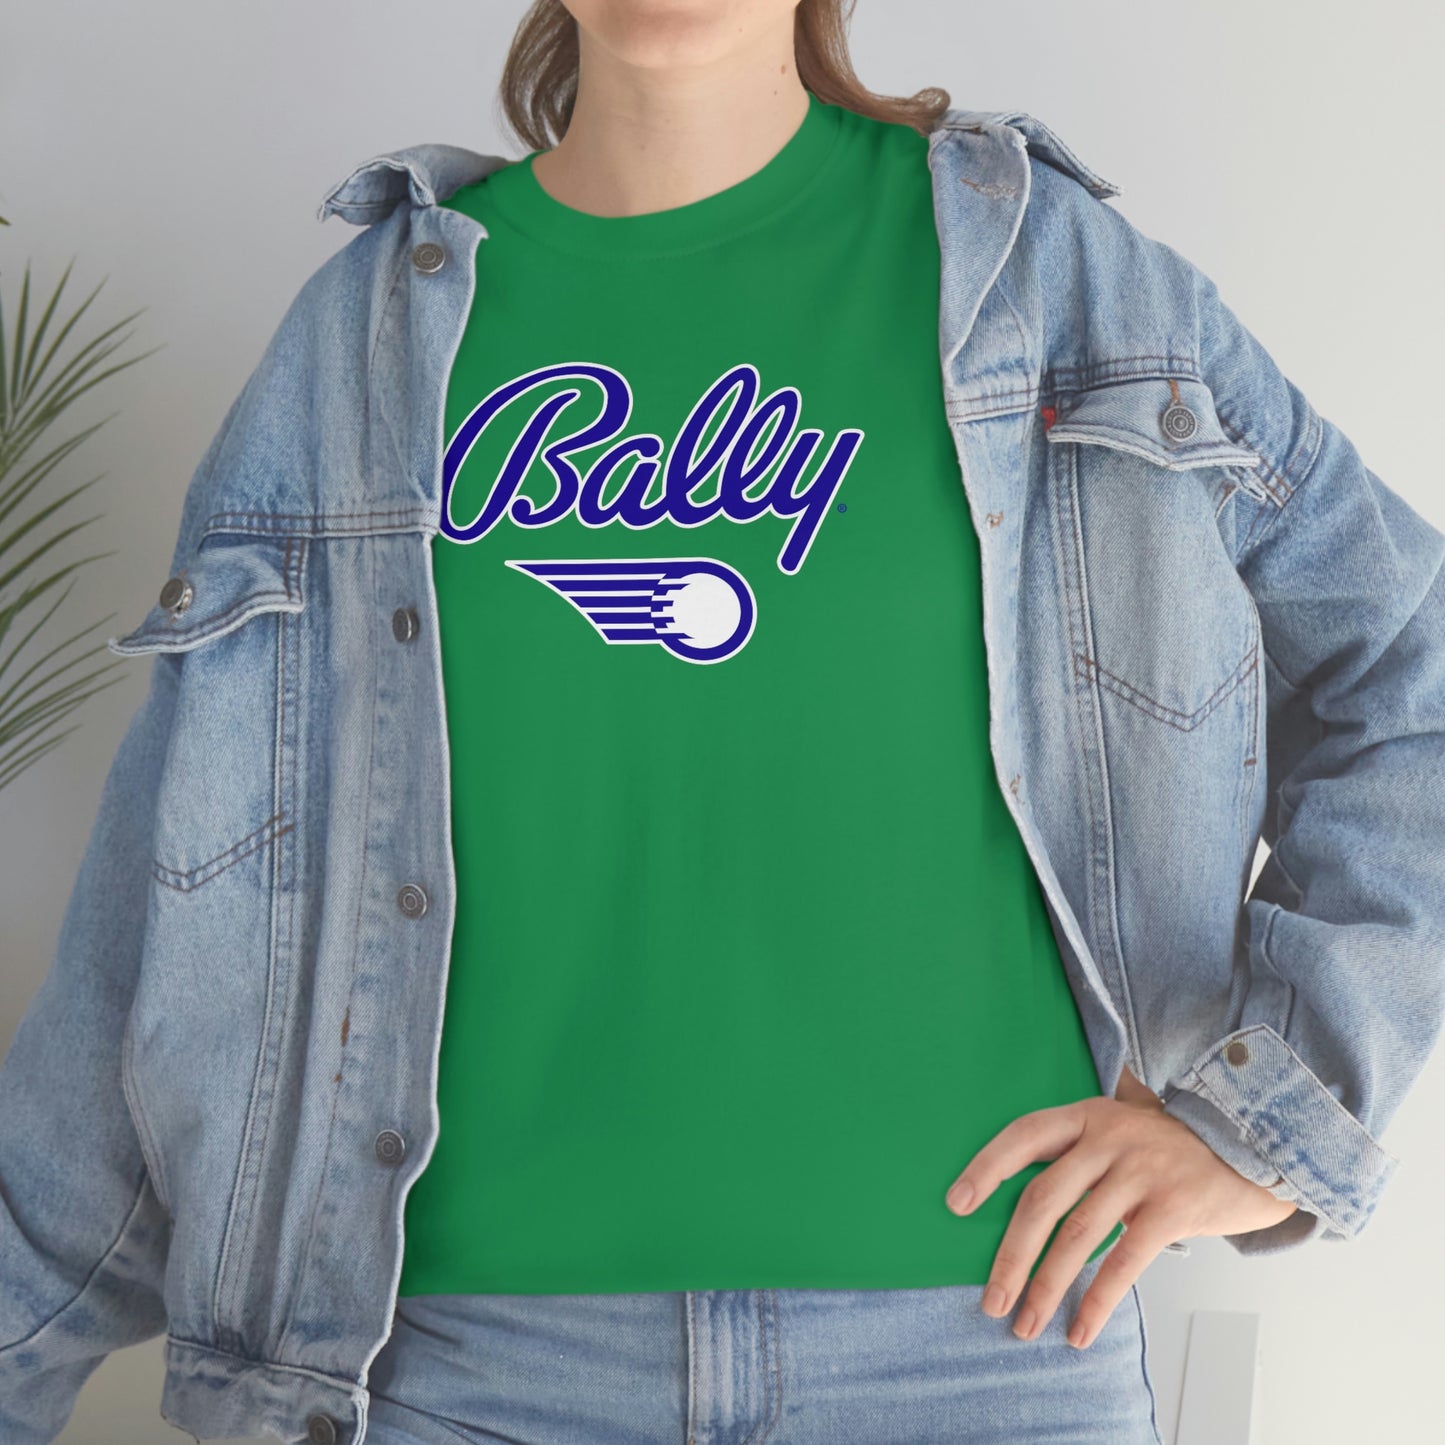 Bally T-Shirt